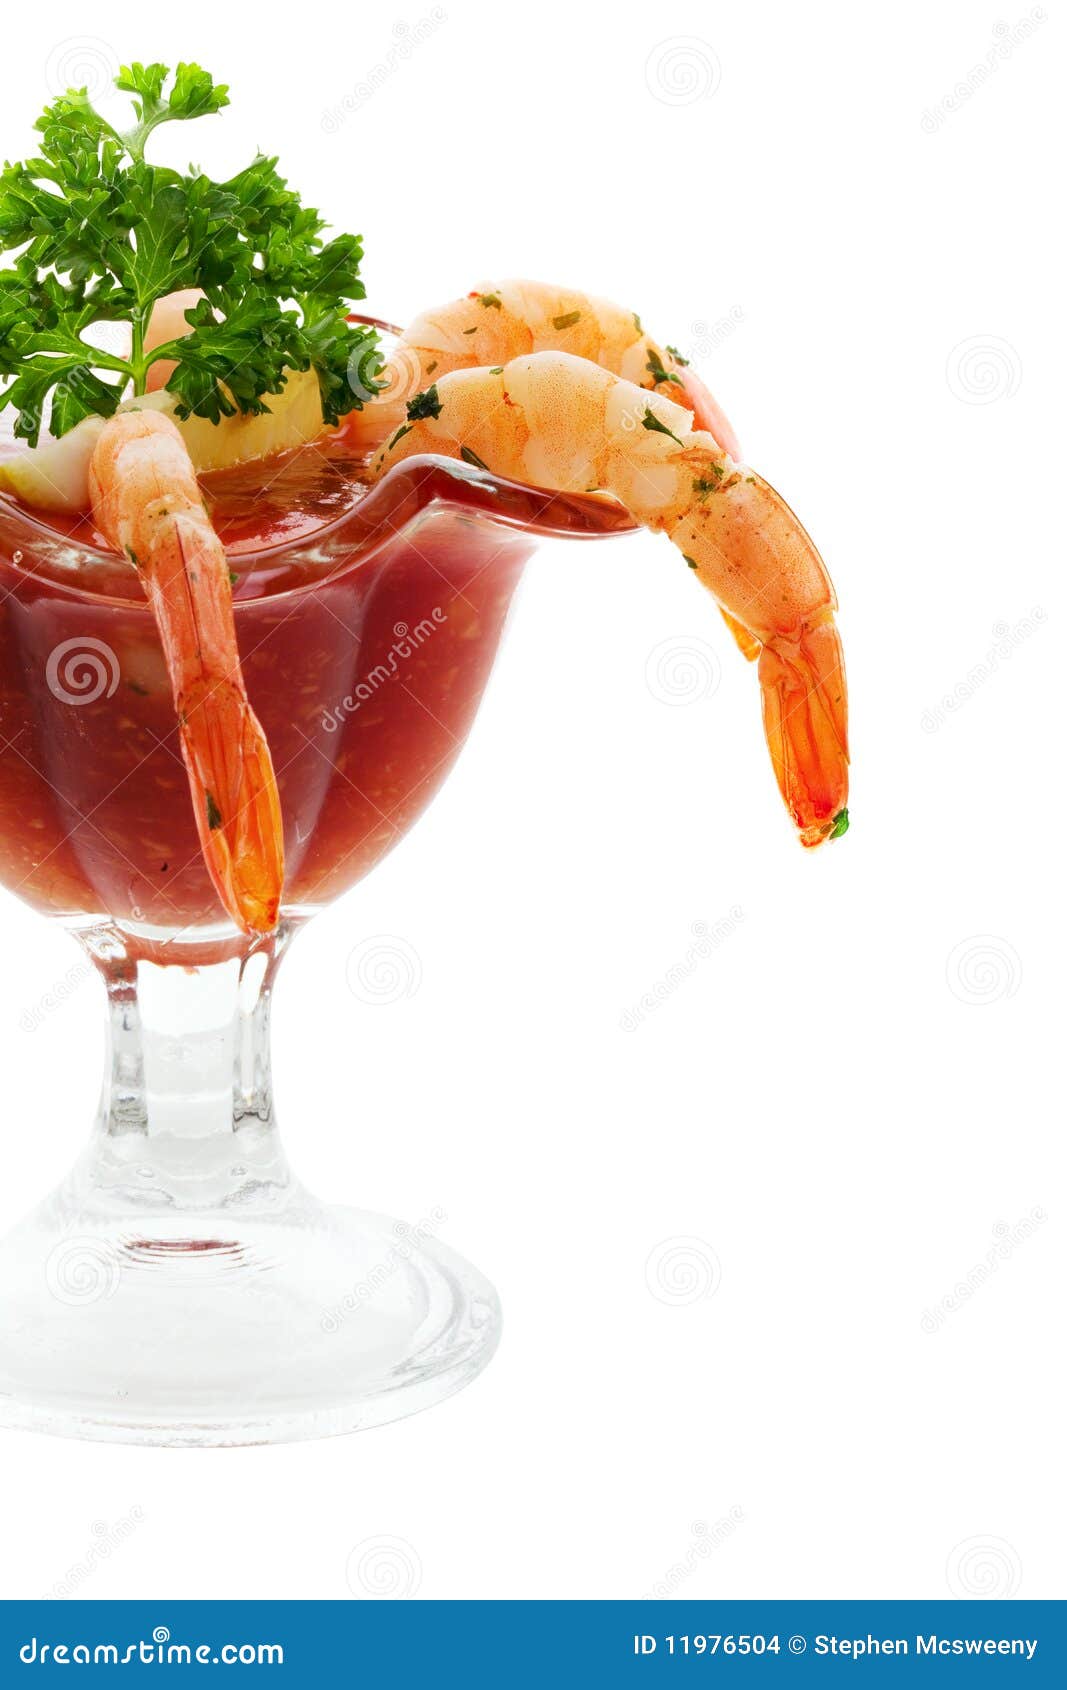 鸡尾酒虾 库存照片. 图片 包括有 关闭, 美食, 食物, 贝类, 浸洗, 红色, 大虾, 鸡尾酒, 进入 - 11976326